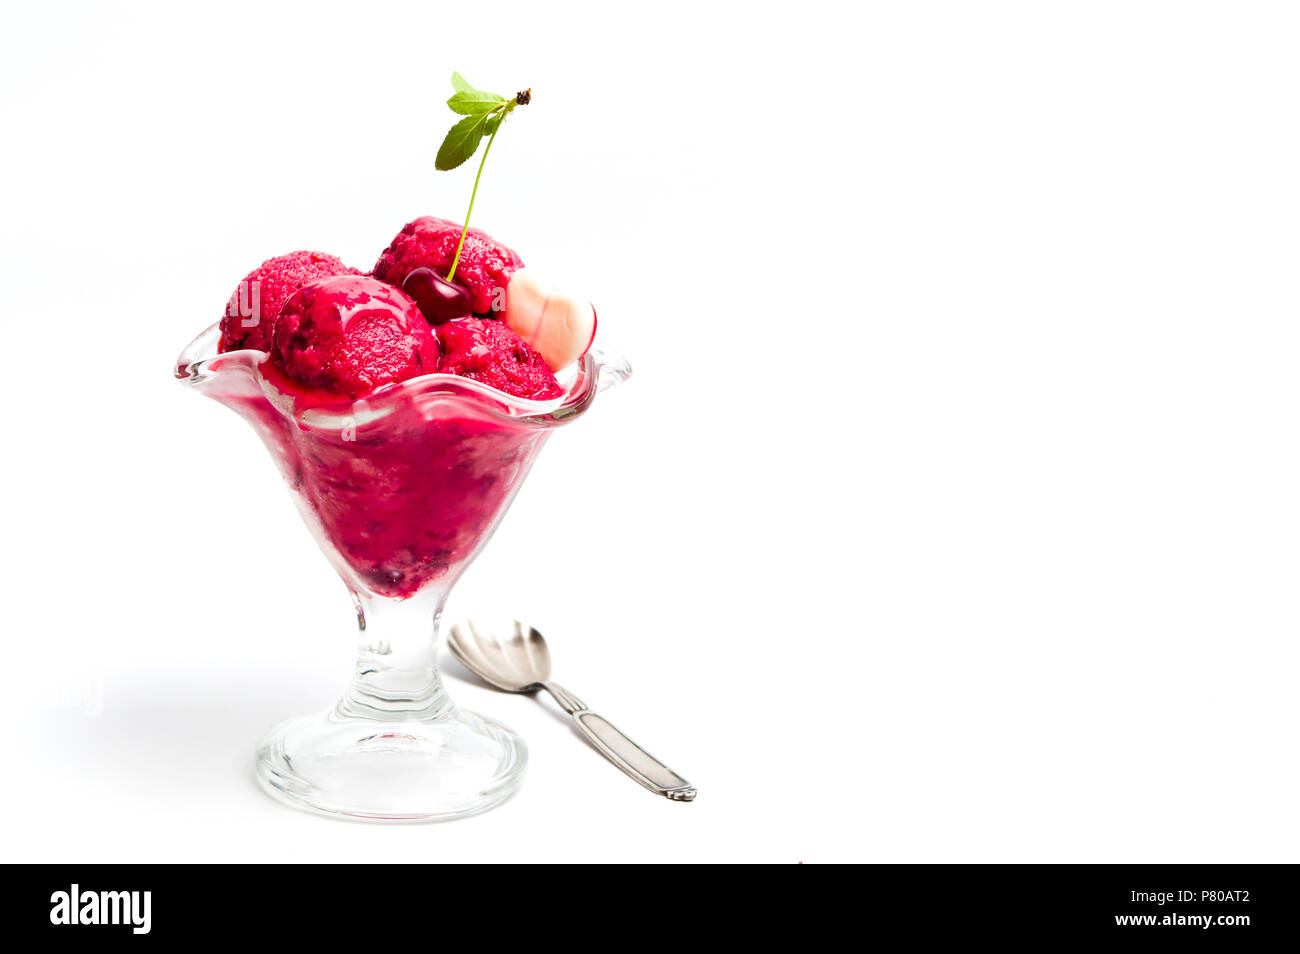 Cherry boules de glace dans une tasse sur blanc Banque D'Images